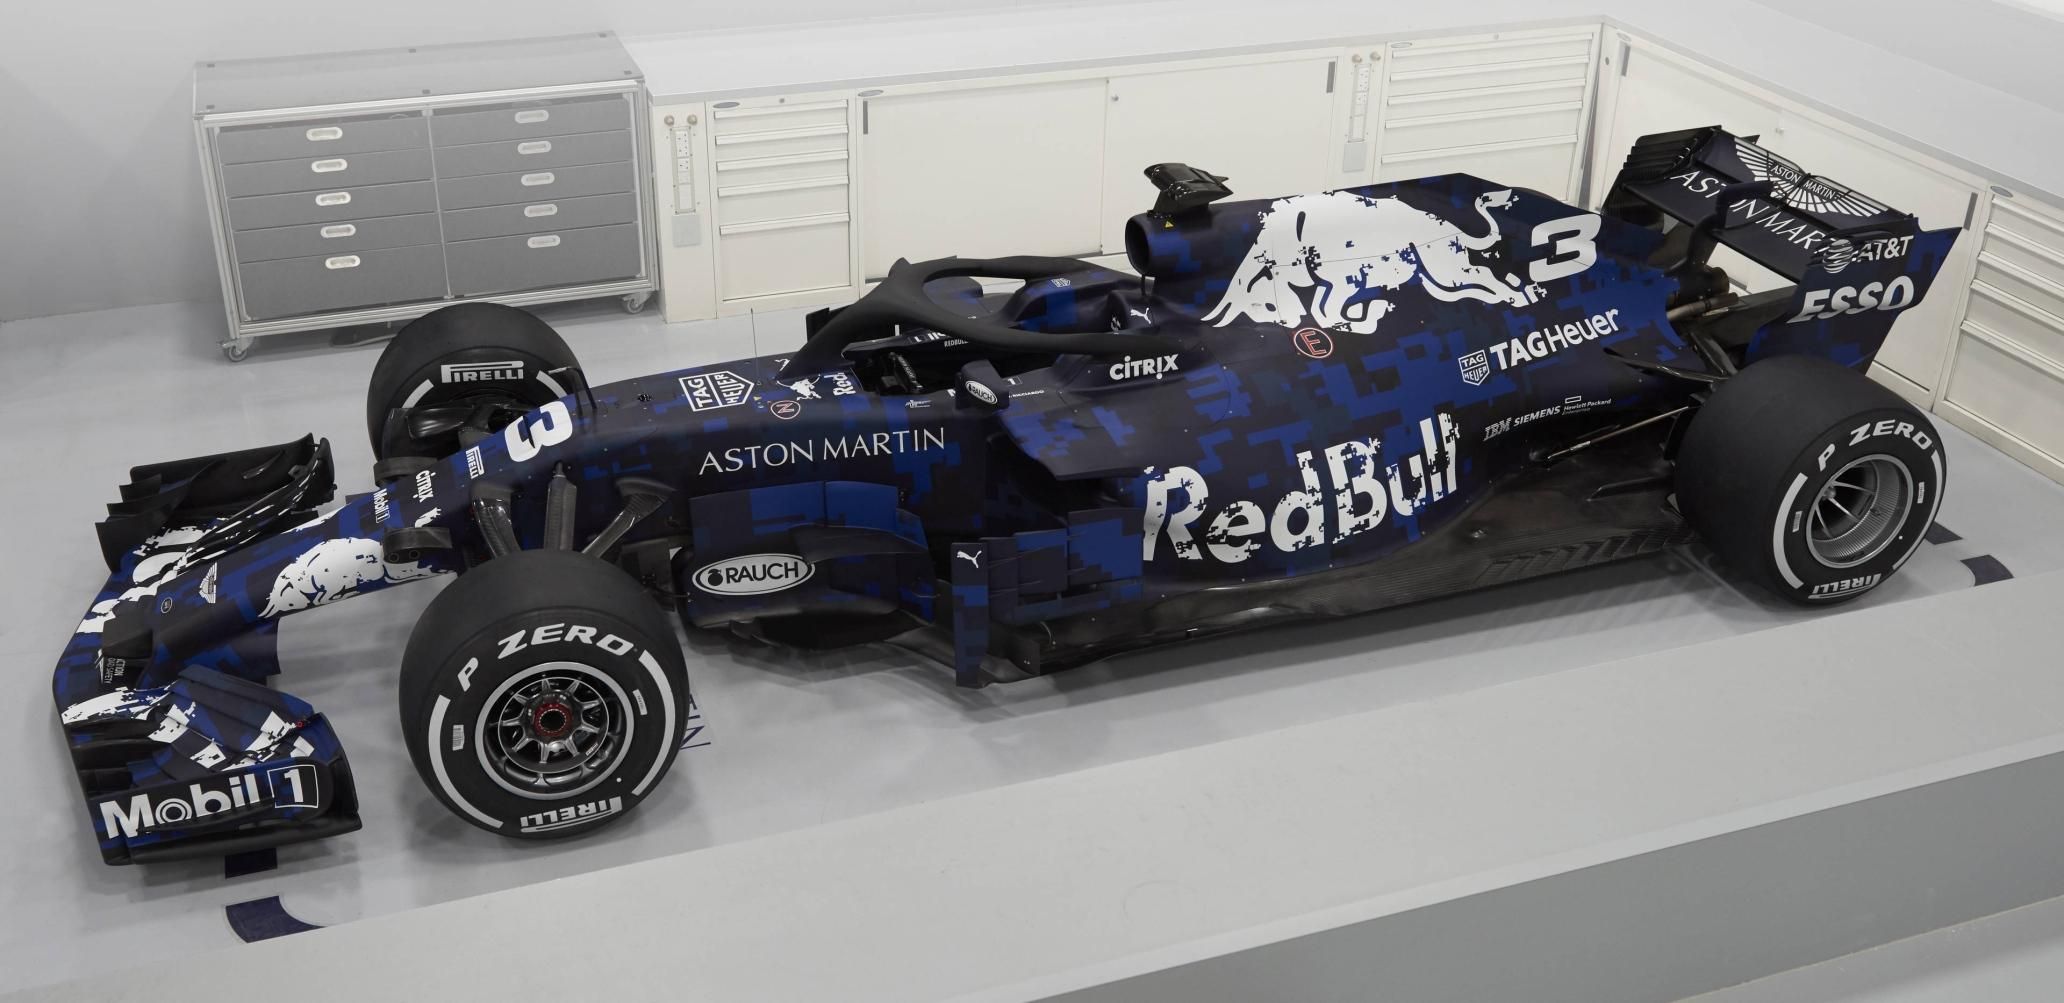 Alpine revela duas pinturas diferentes para carro da F1 2022